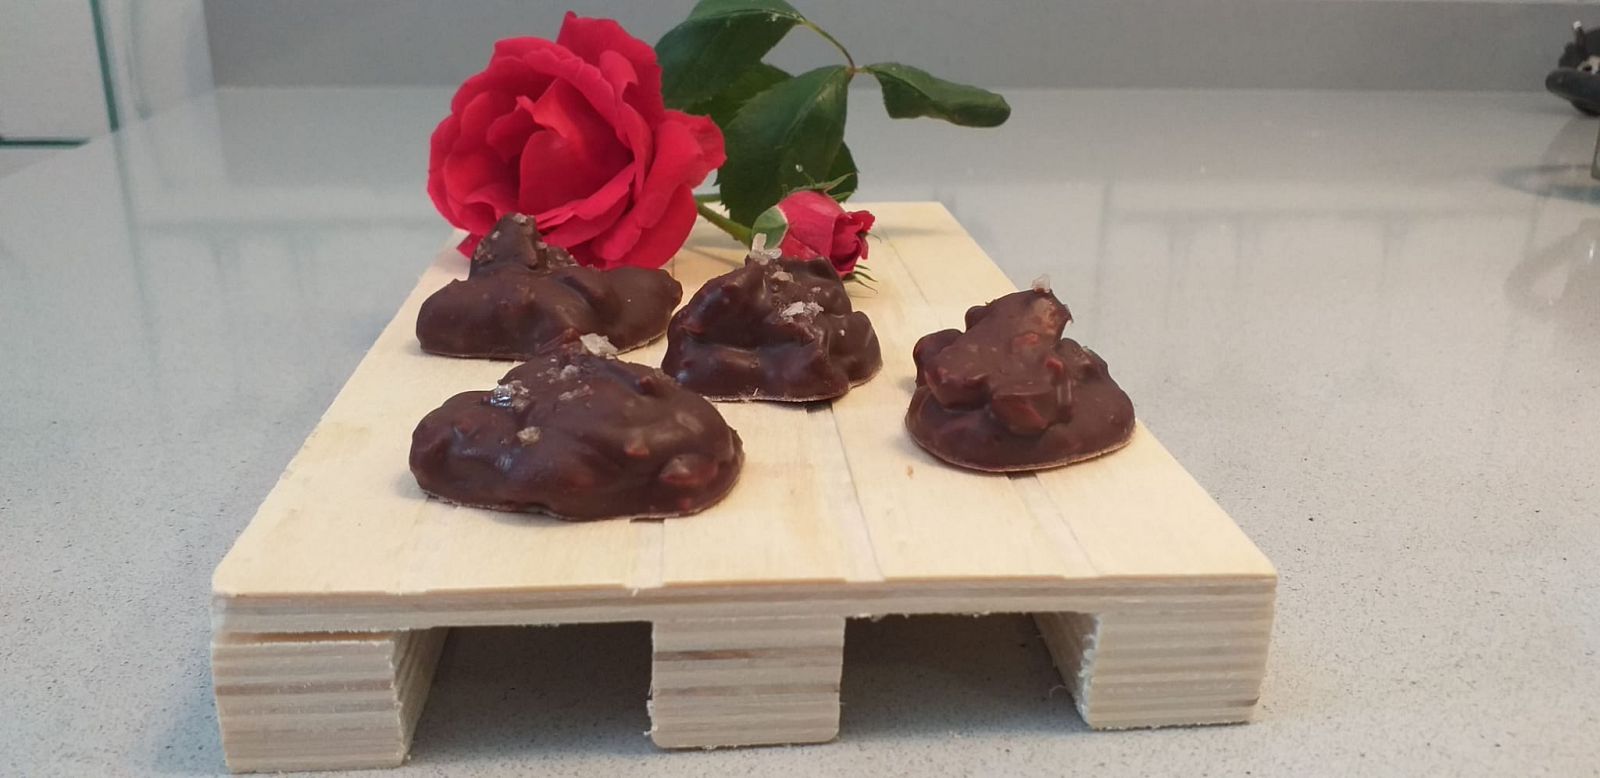 España Directo - Receta de rocas de chocolate con frutos secos